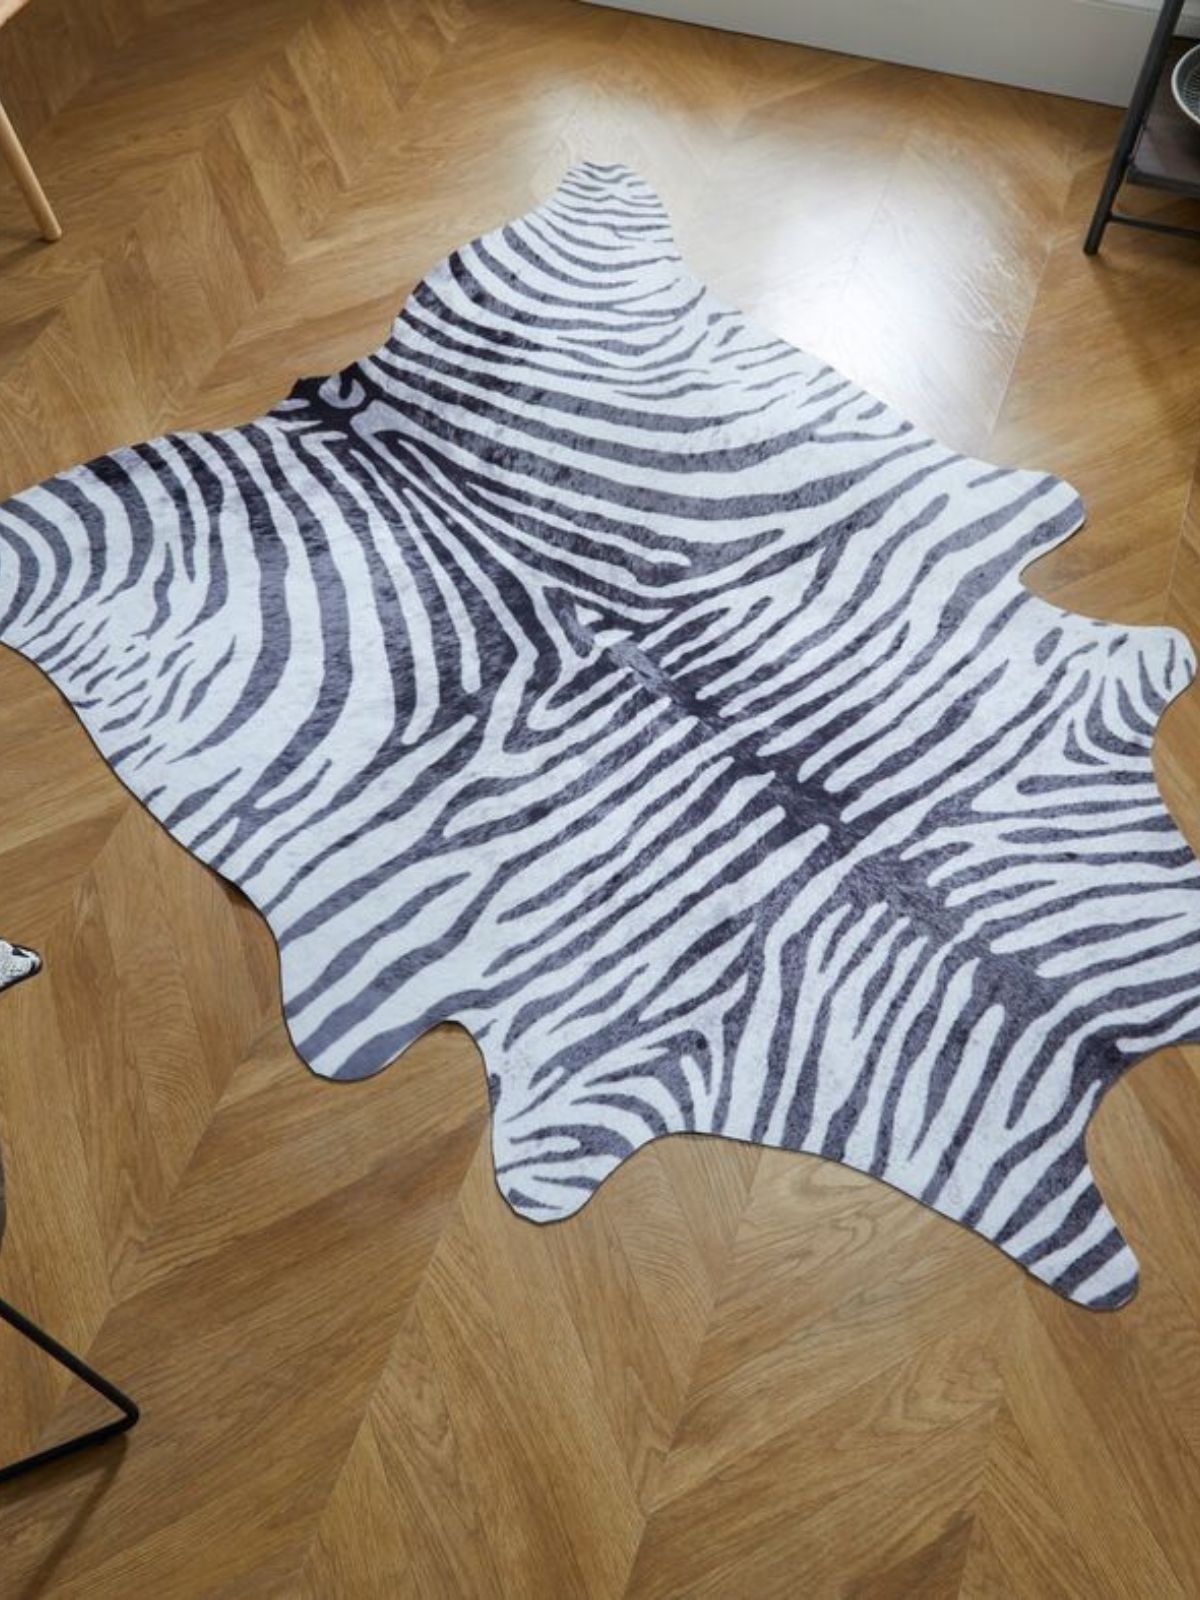 Tappeto animale Zebra Print in poliestere, colore bianco e nero 155x195 cm.-2